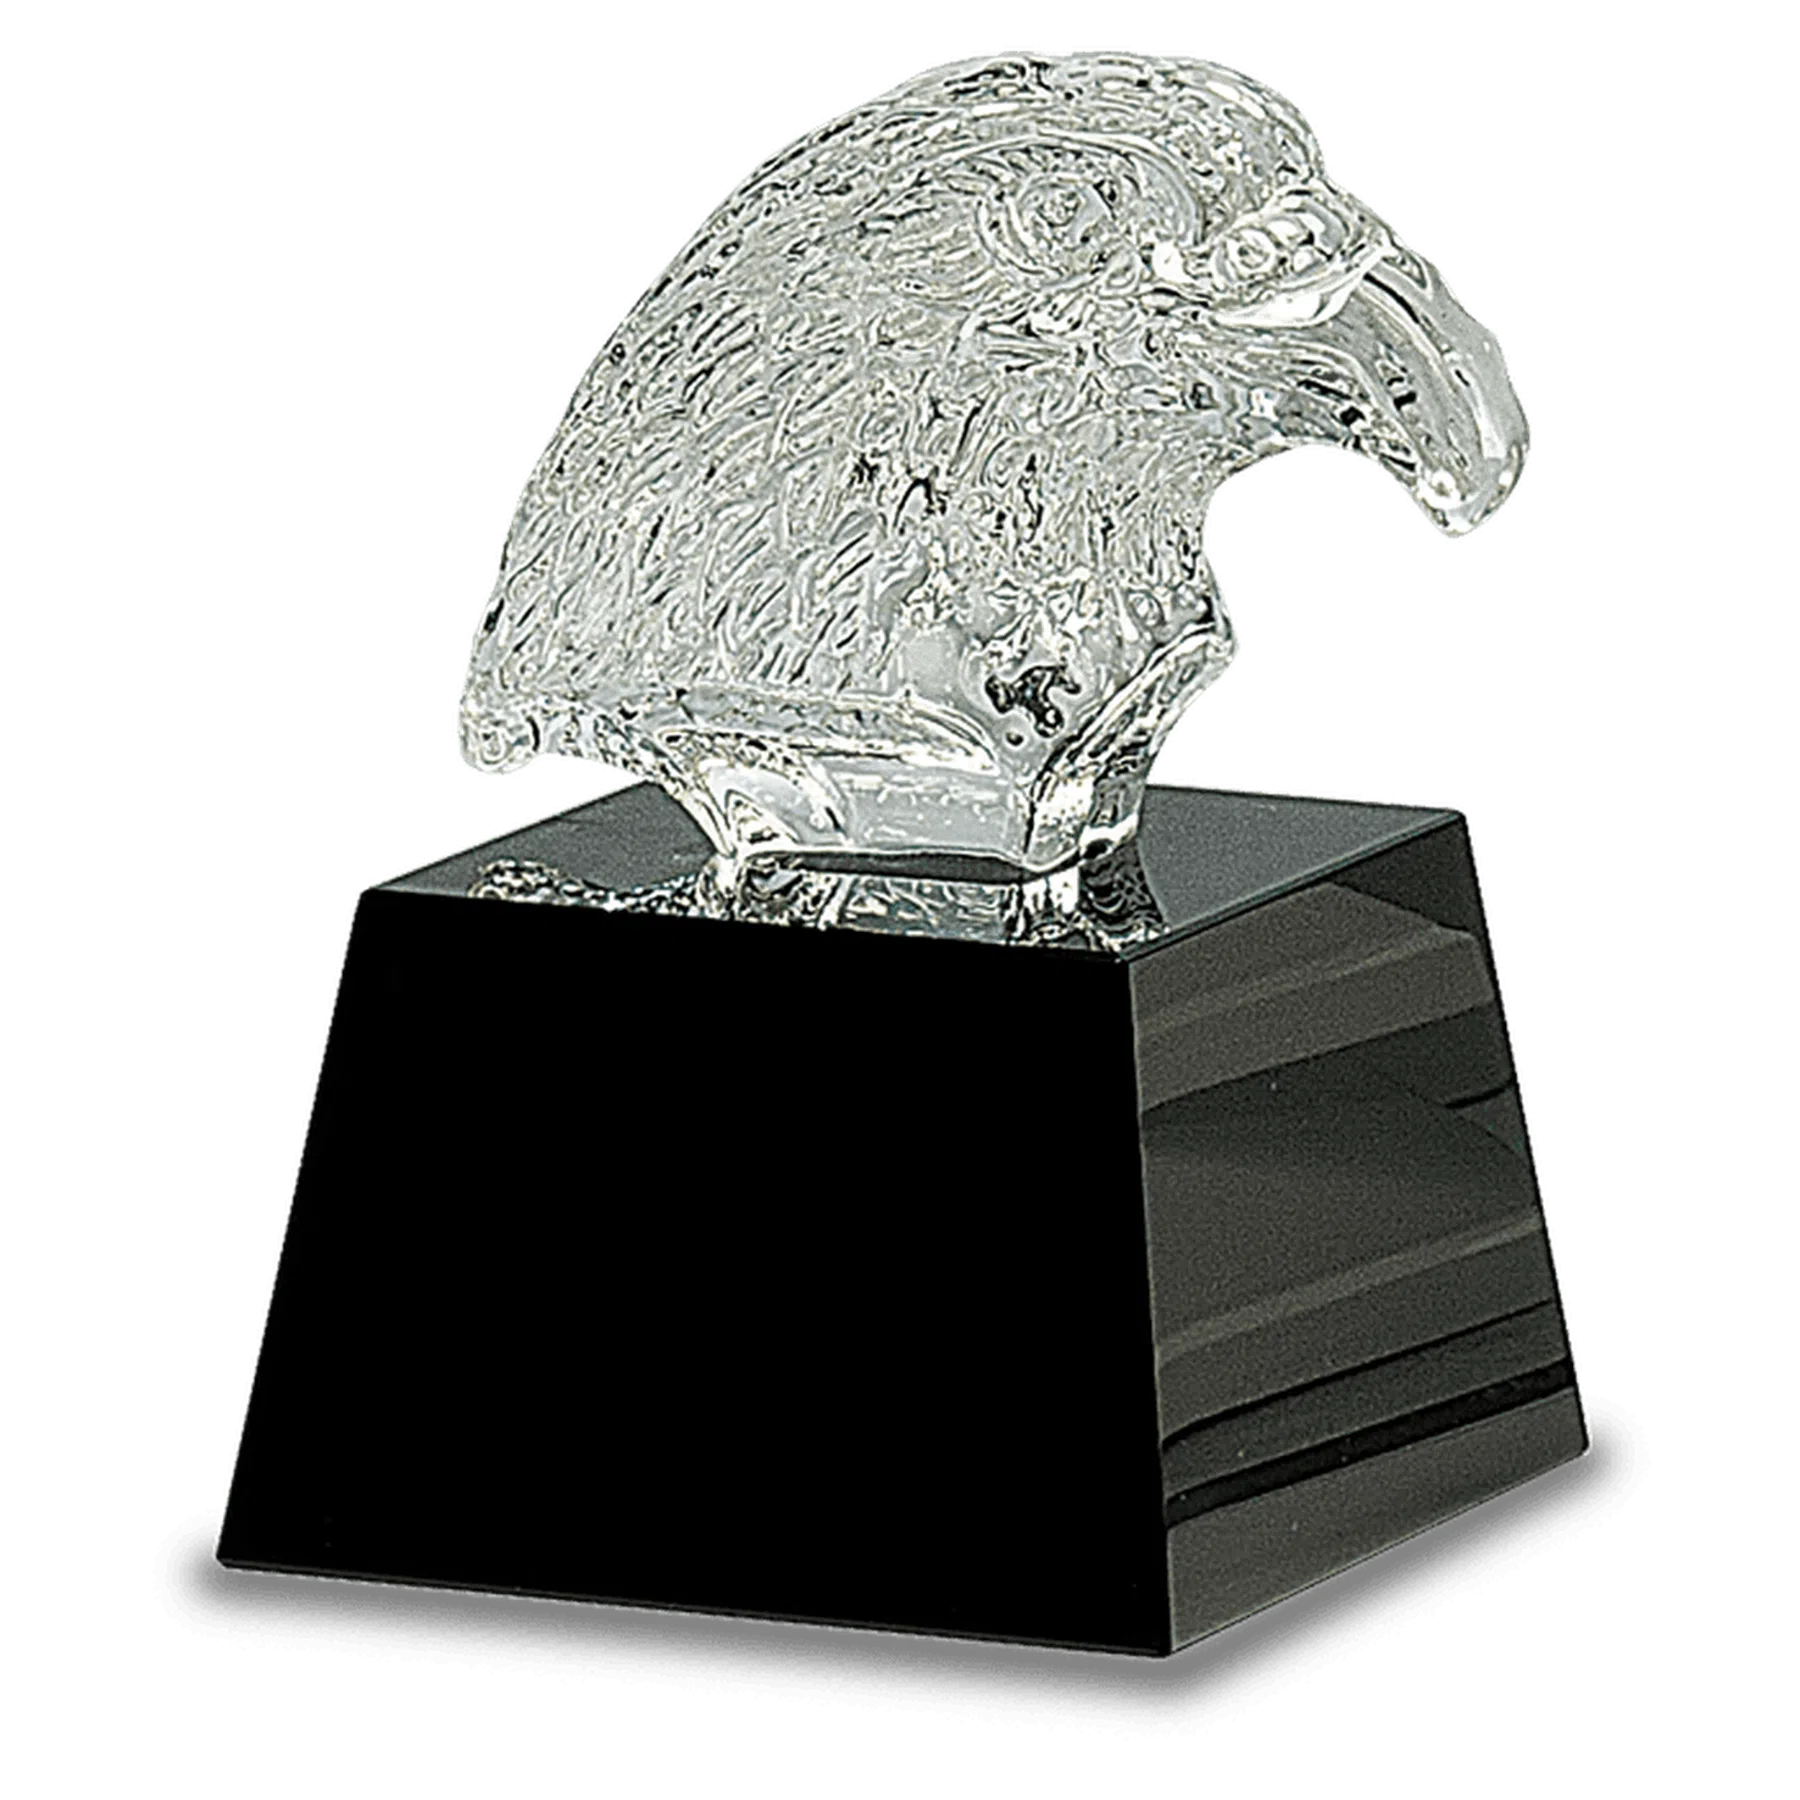 5 3/4" Carved Crystal Eagle Head on Black Pedestal Base